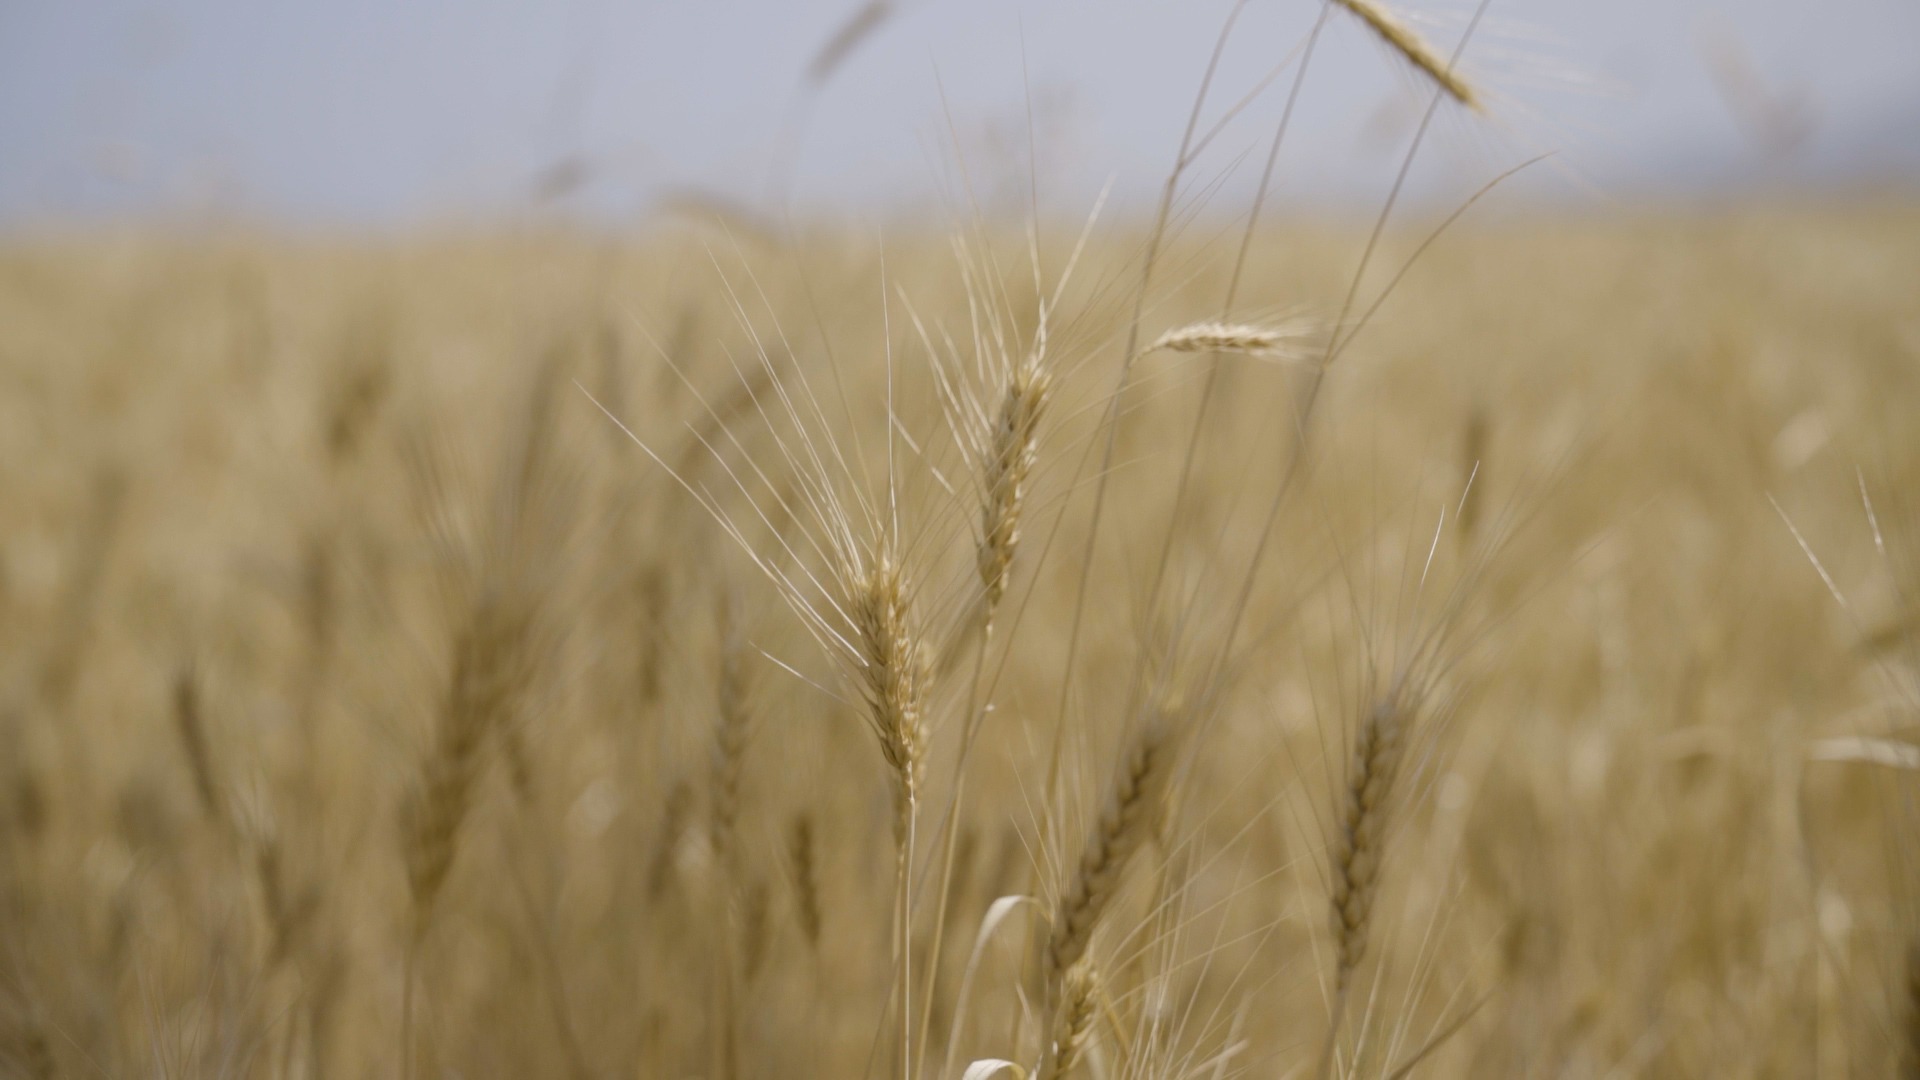 Կառավարությունը կփոխհատուցի աշնանացան ցորենի մշակության ծախսերի 50 տոկոսը